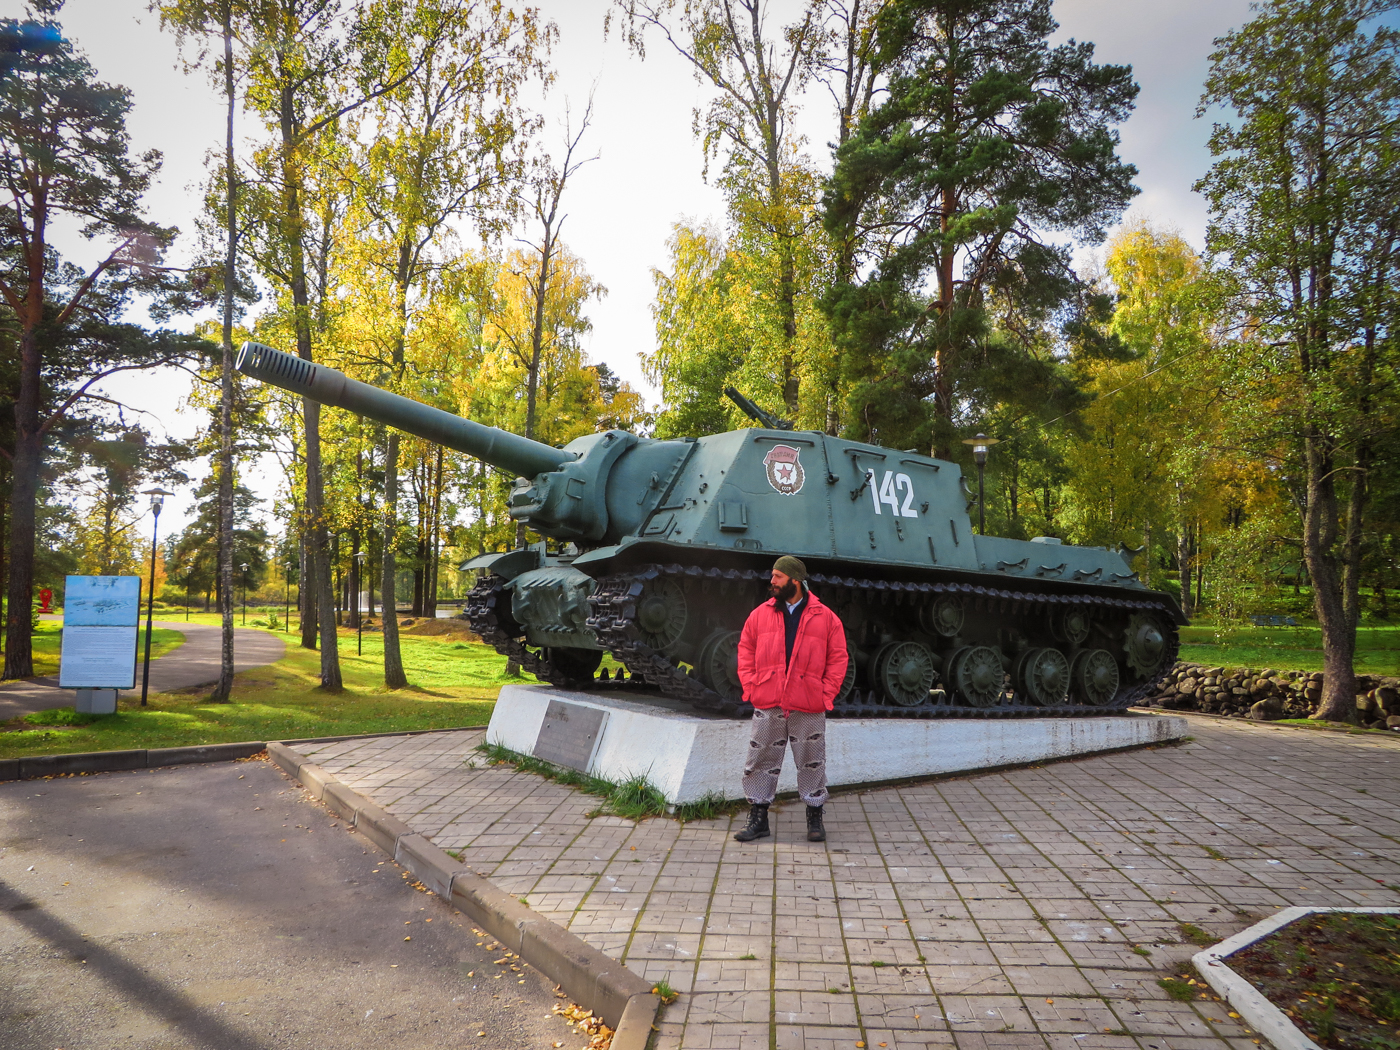 Tiago em frente a um tanque de guerra da Segunda Guerra Mundial